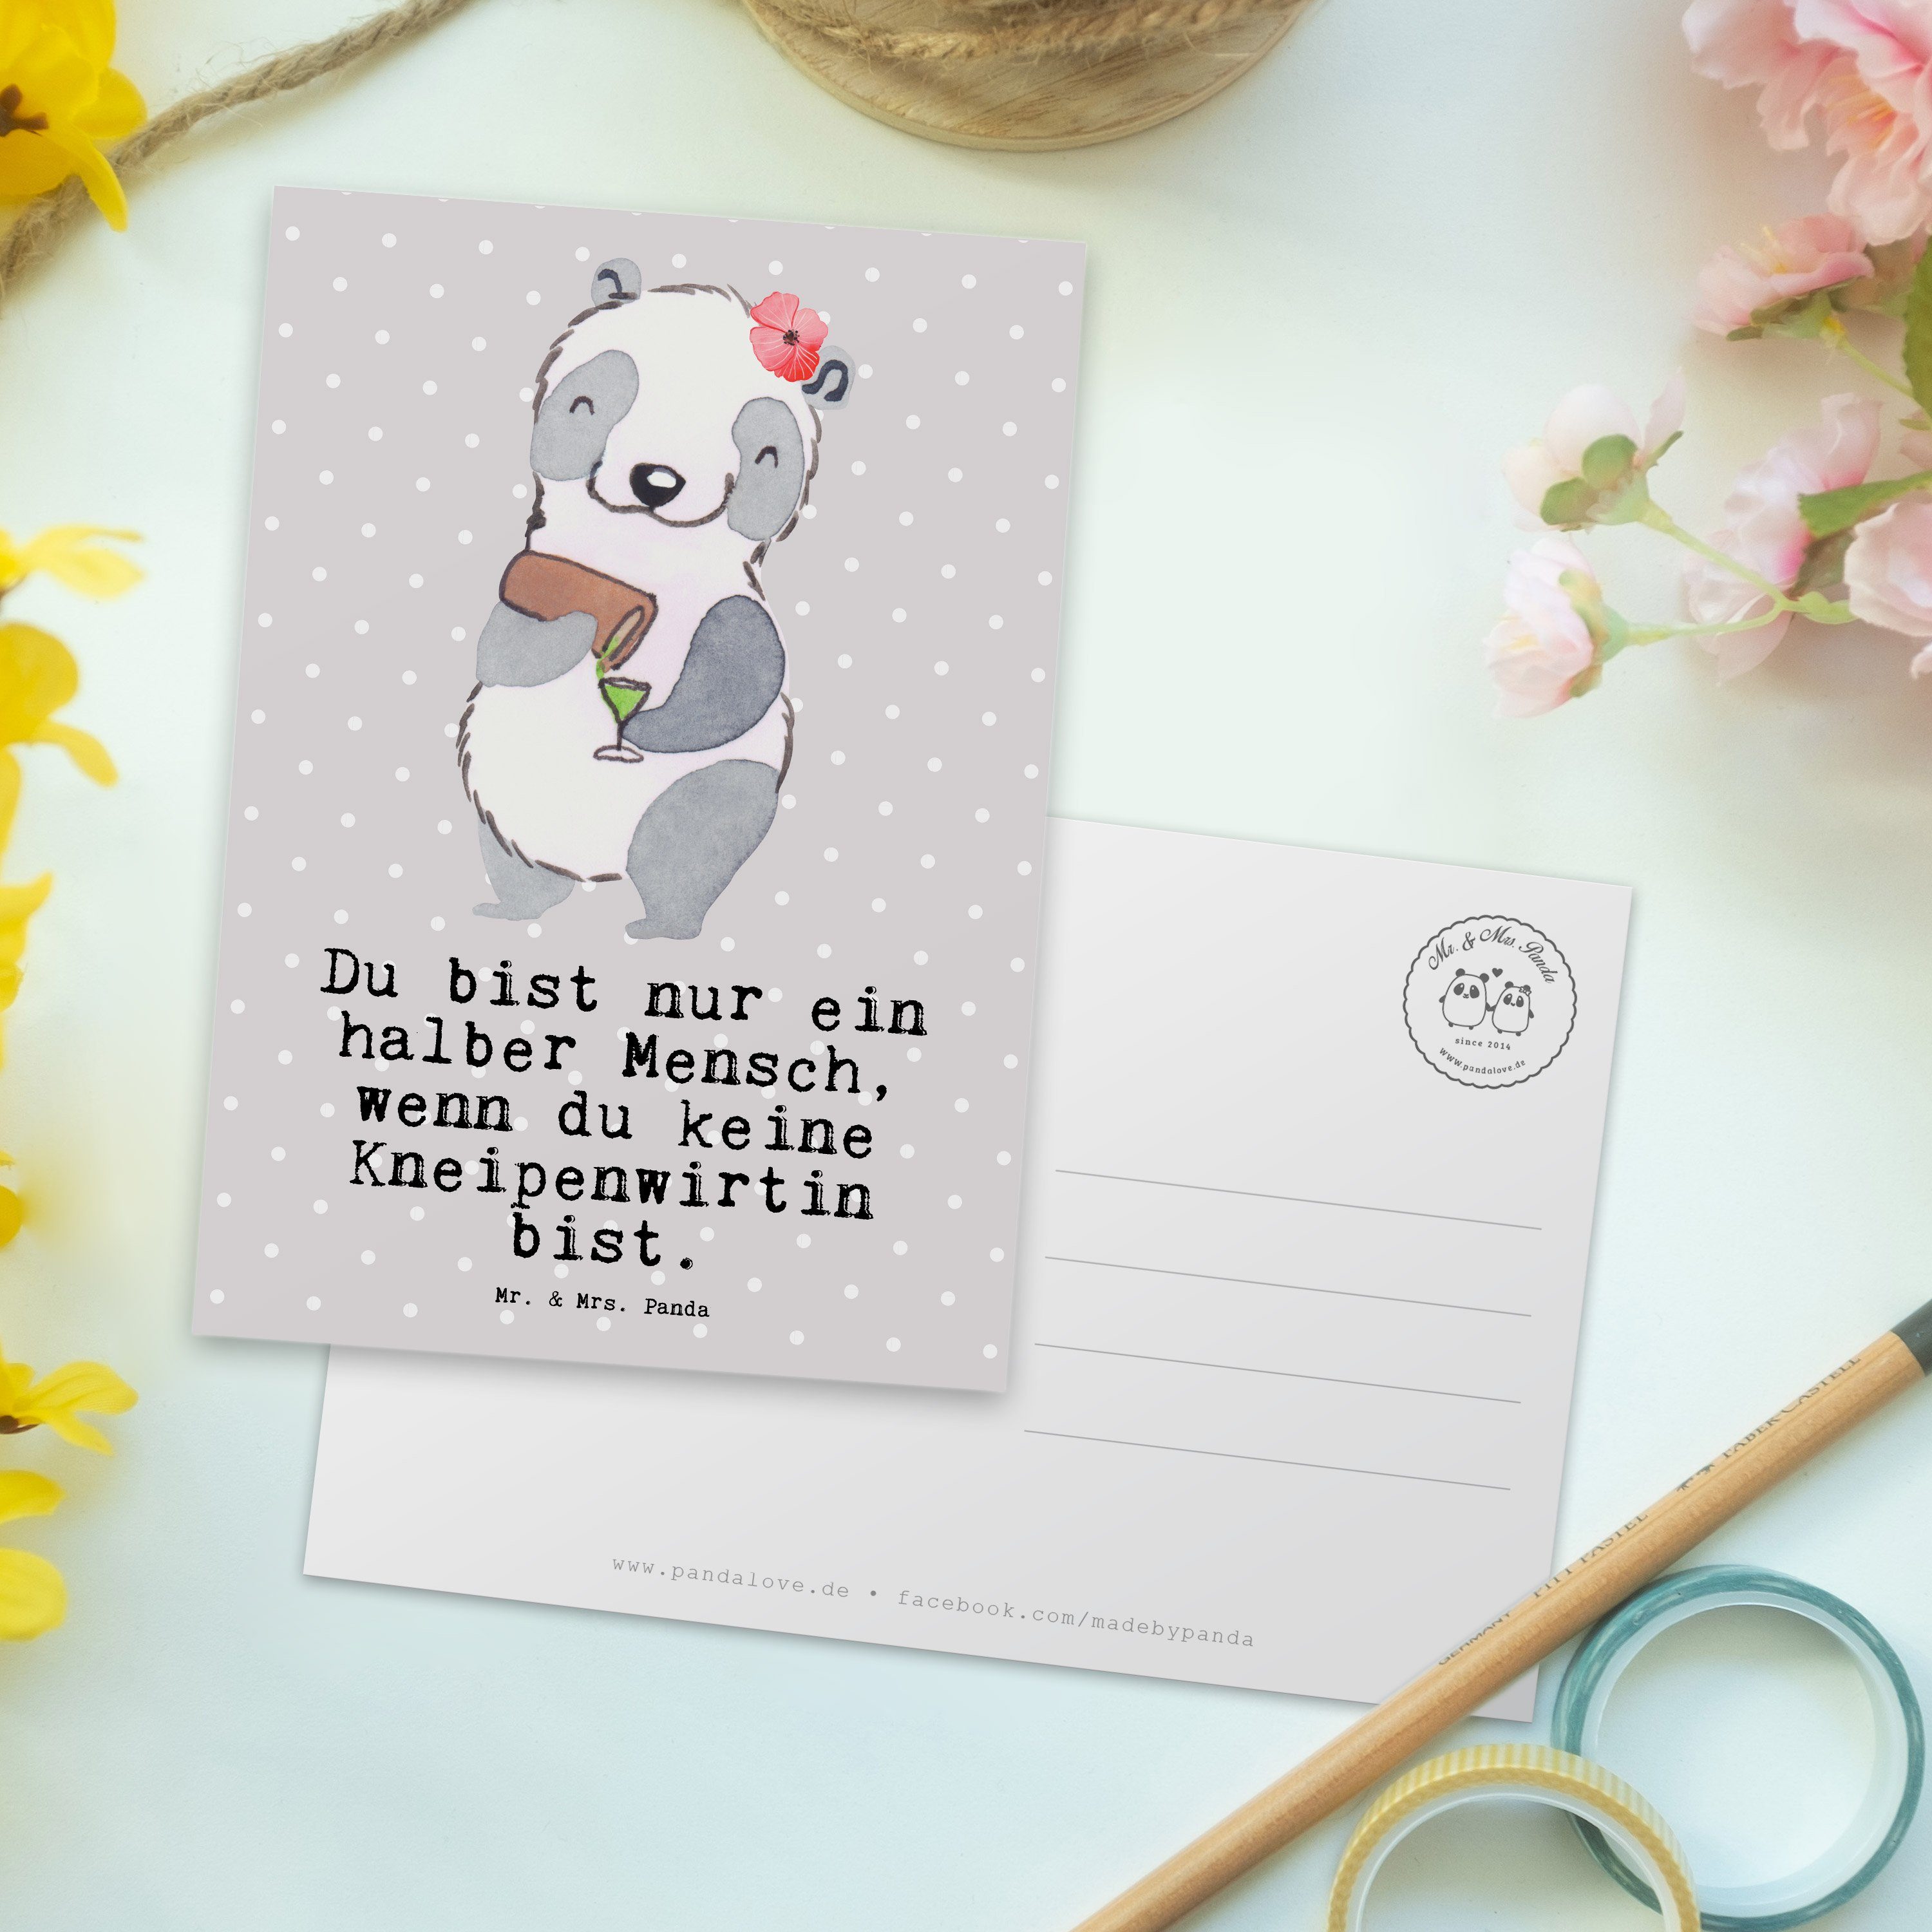 Beruf, Panda Ge Pastell Geschenk, & Kneipenwirtin Grau Mr. Mrs. - Jubiläum, Herz Postkarte mit -